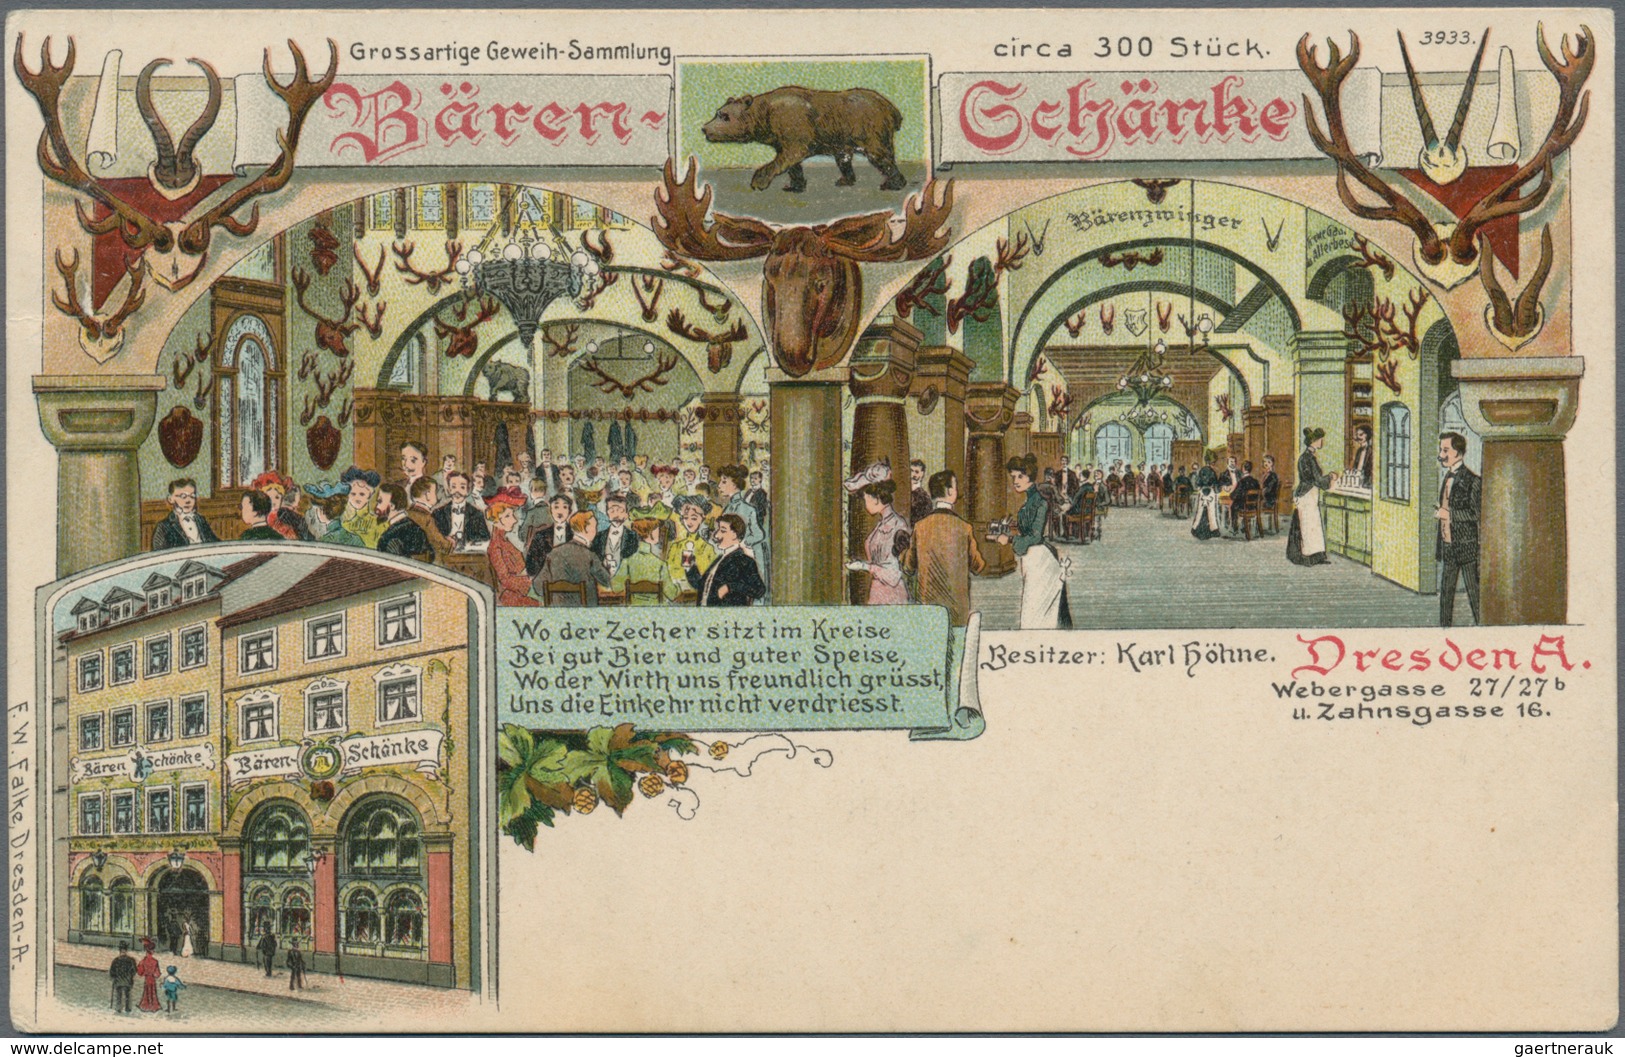 Ansichtskarten: Deutschland: 1905/1940 (ca.), Partie von ca. 43 Karten/Fotos plus Leporello "EMDEN"